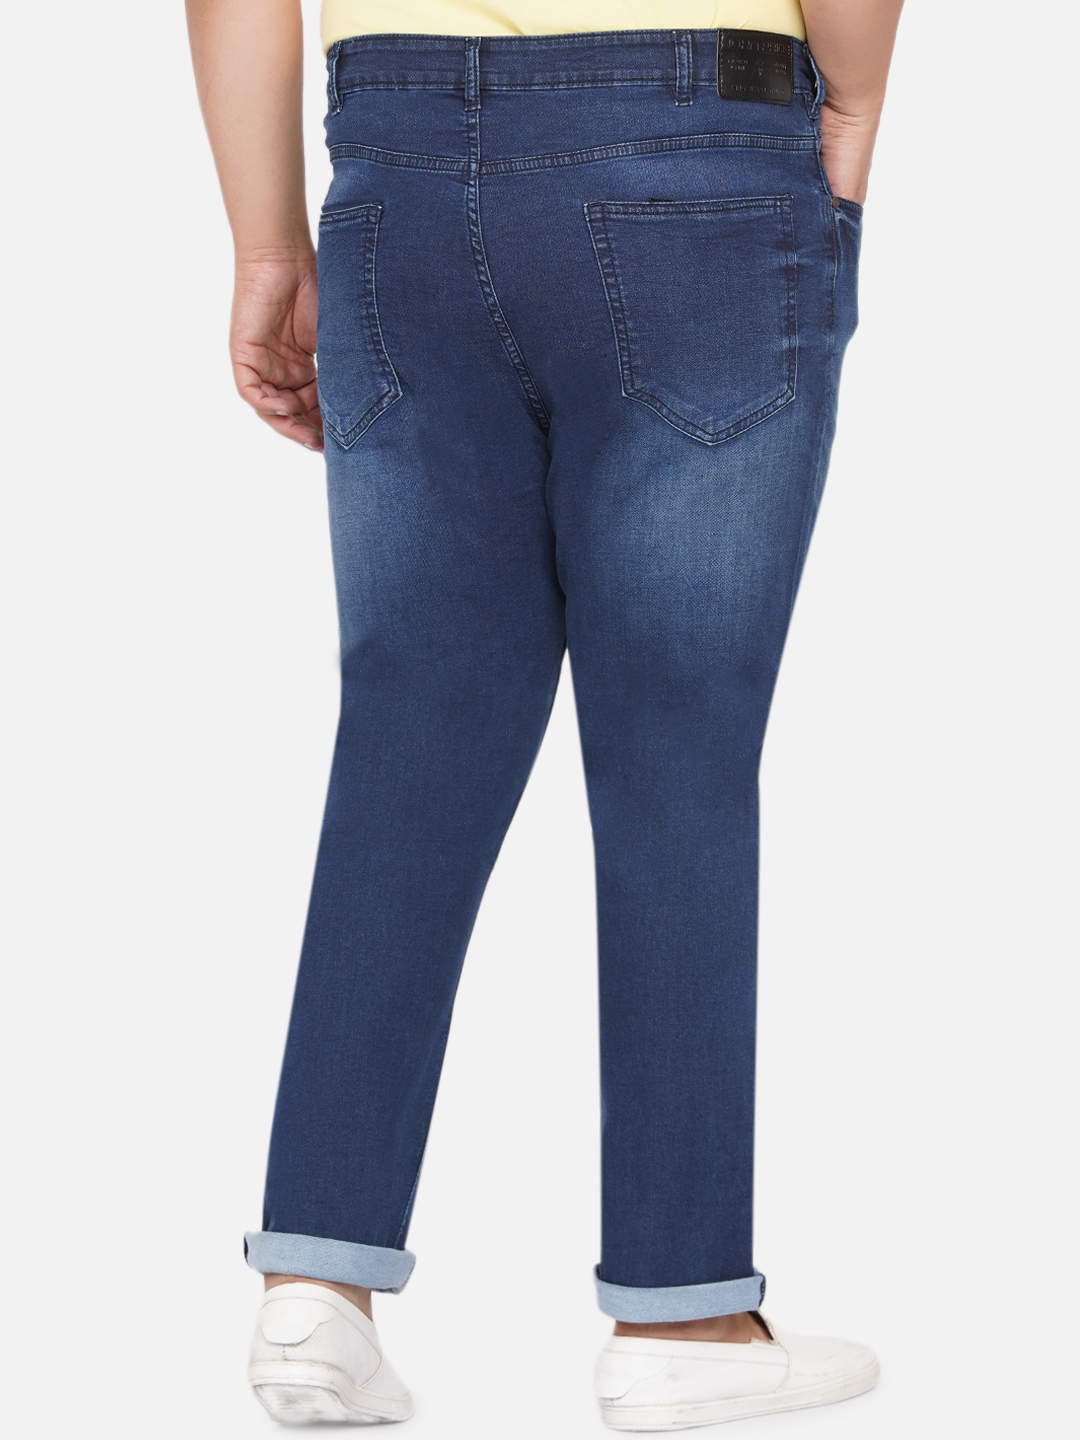 bottomwear/jeans/BEPLJP28165/bepljp28165-5.jpg